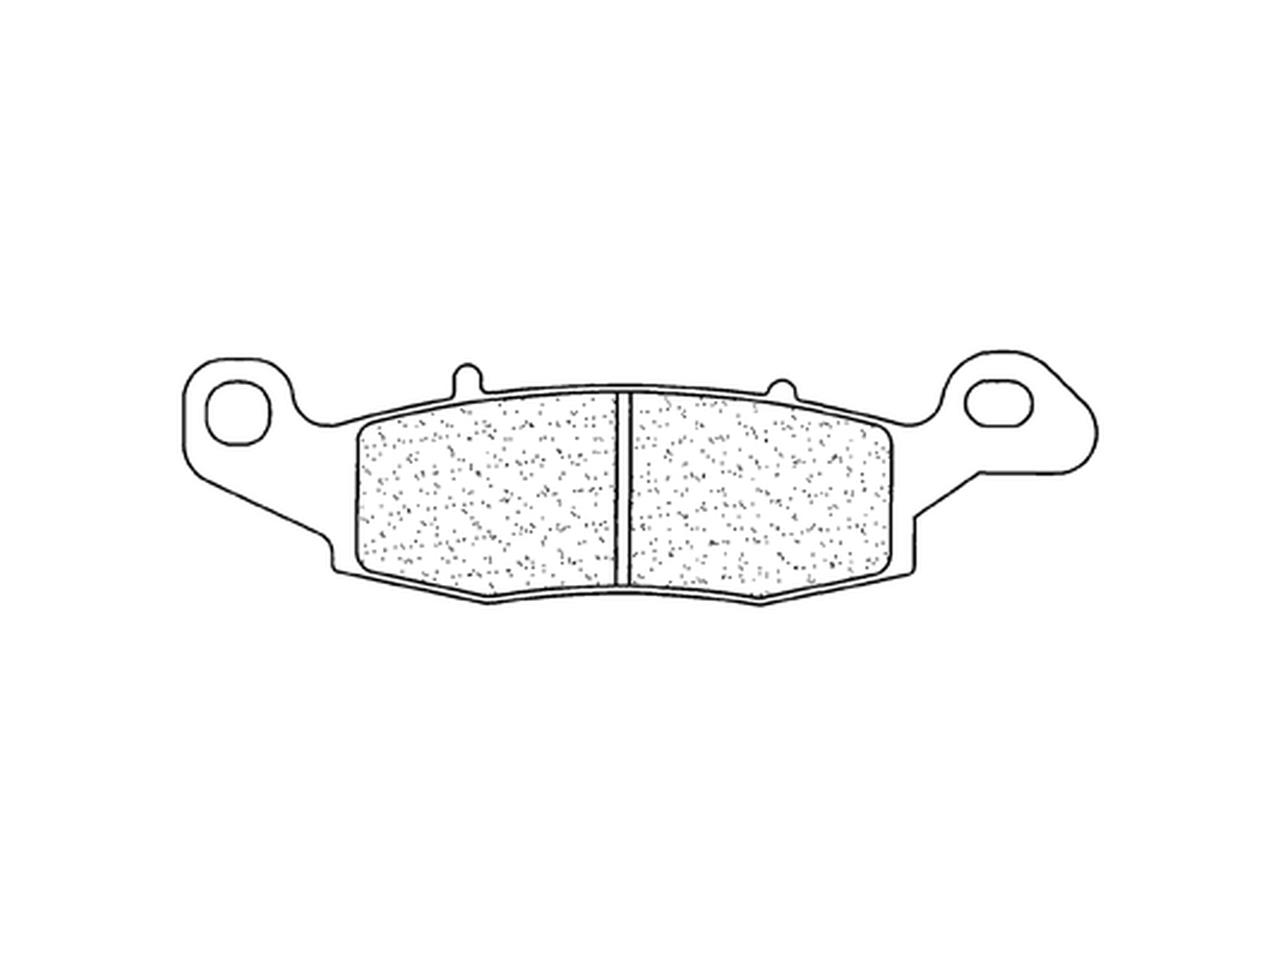 Plaquettes de frein Racing en métal fritté : 2383C60 marque CL Brakes | Compatible Moto